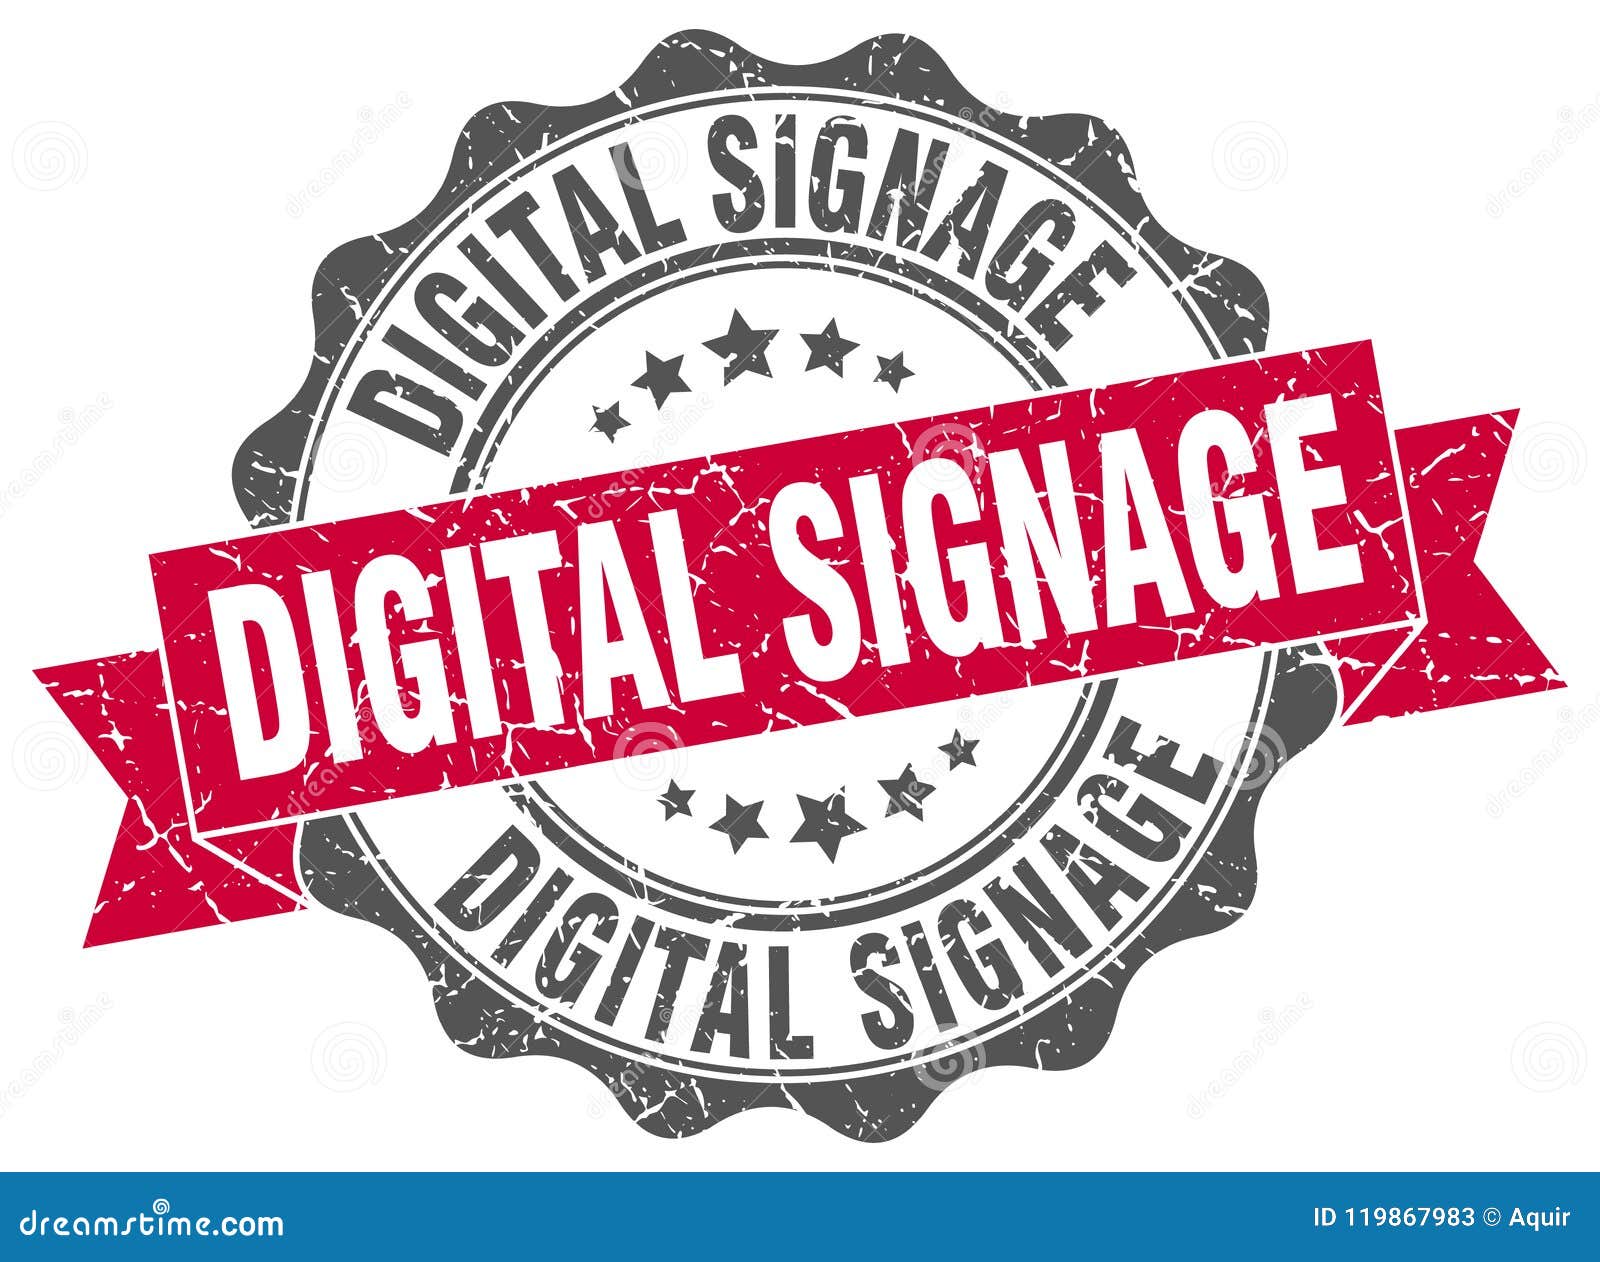 digital signage seal. stamp